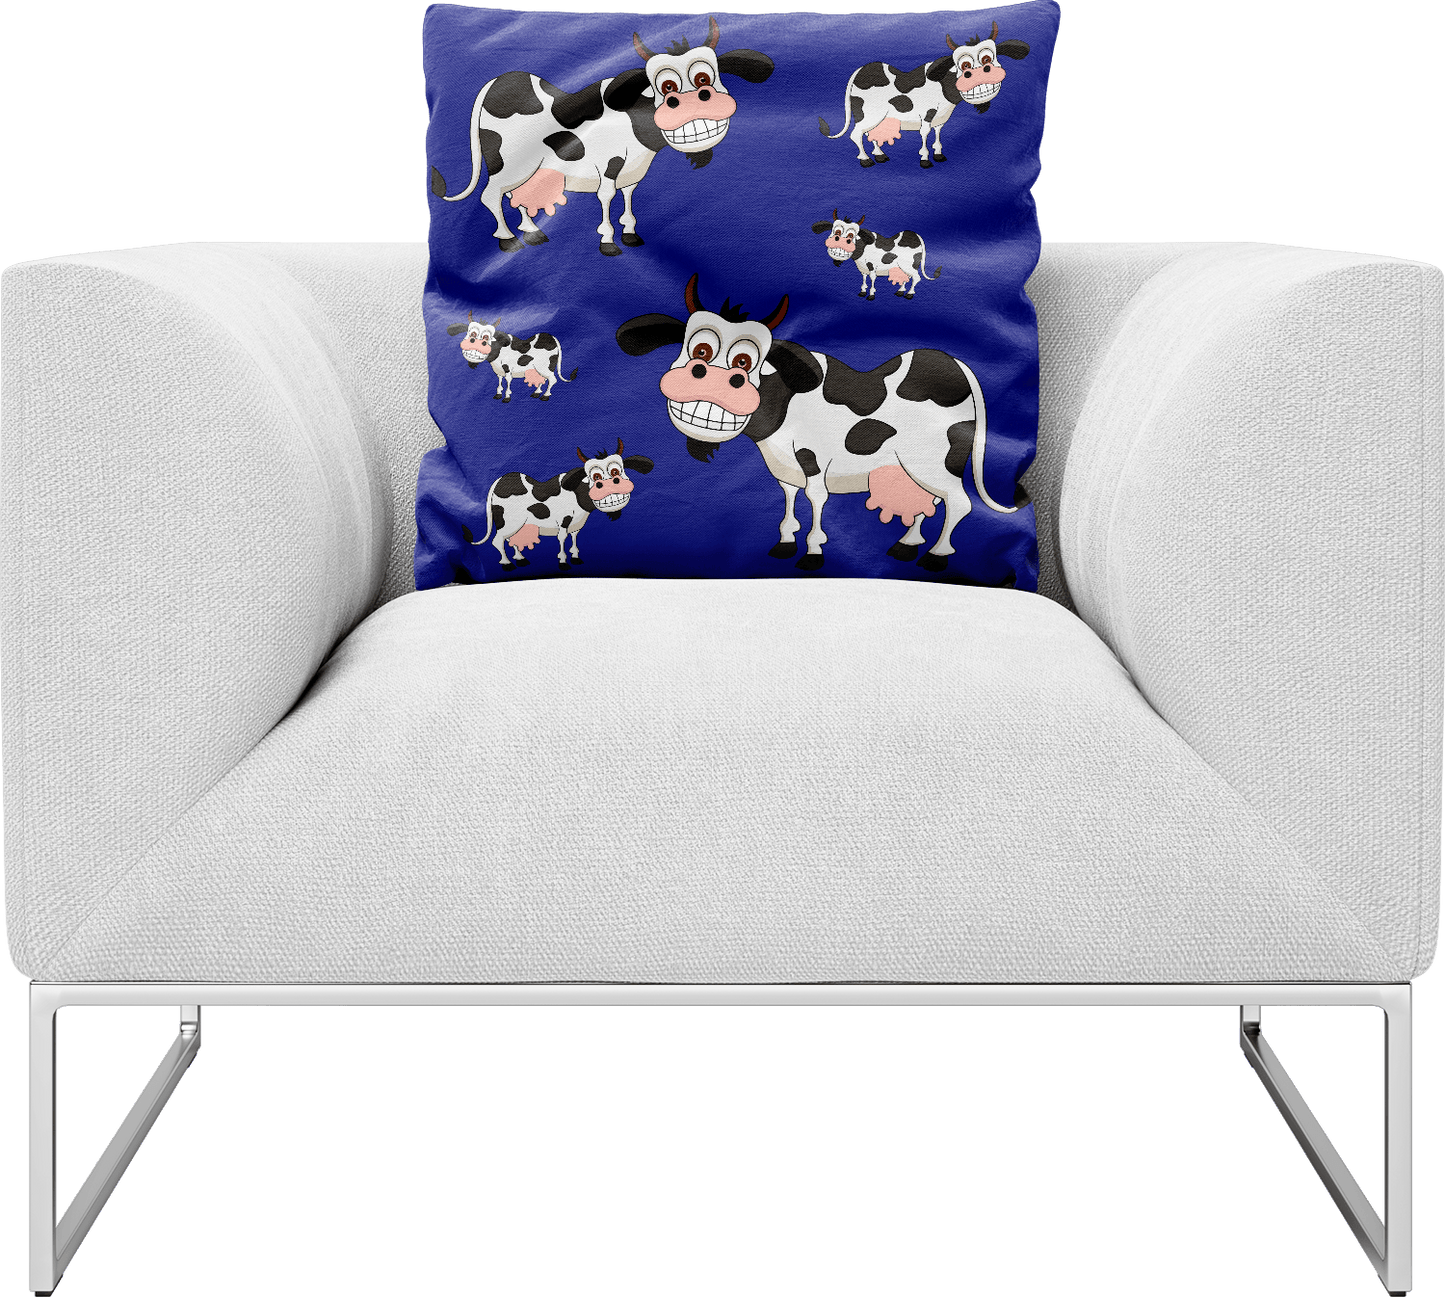 Fussy Cow Pillows Cushions - fungear.com.au